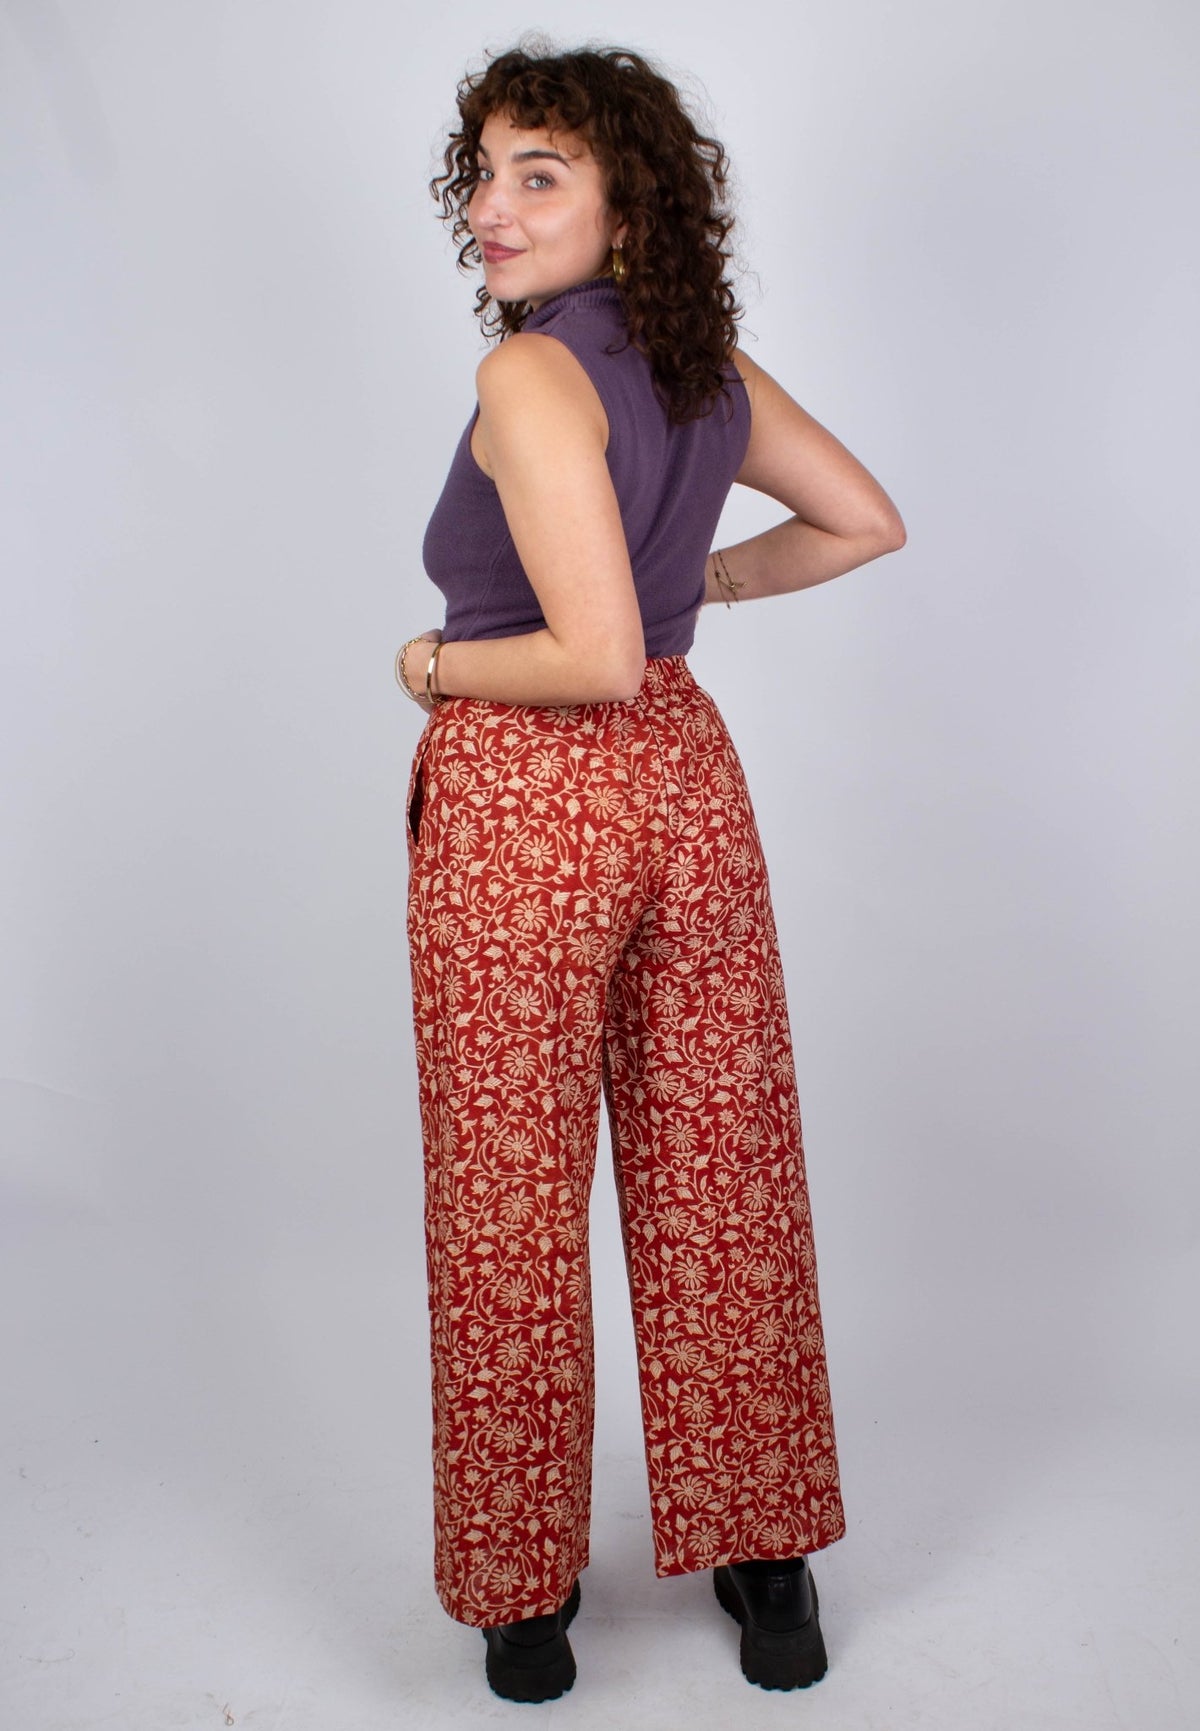 Pantalon SAGARA - Imprimé Bageecha - Coton bio - Pantalon - Azaadi, la mode responsable accessible